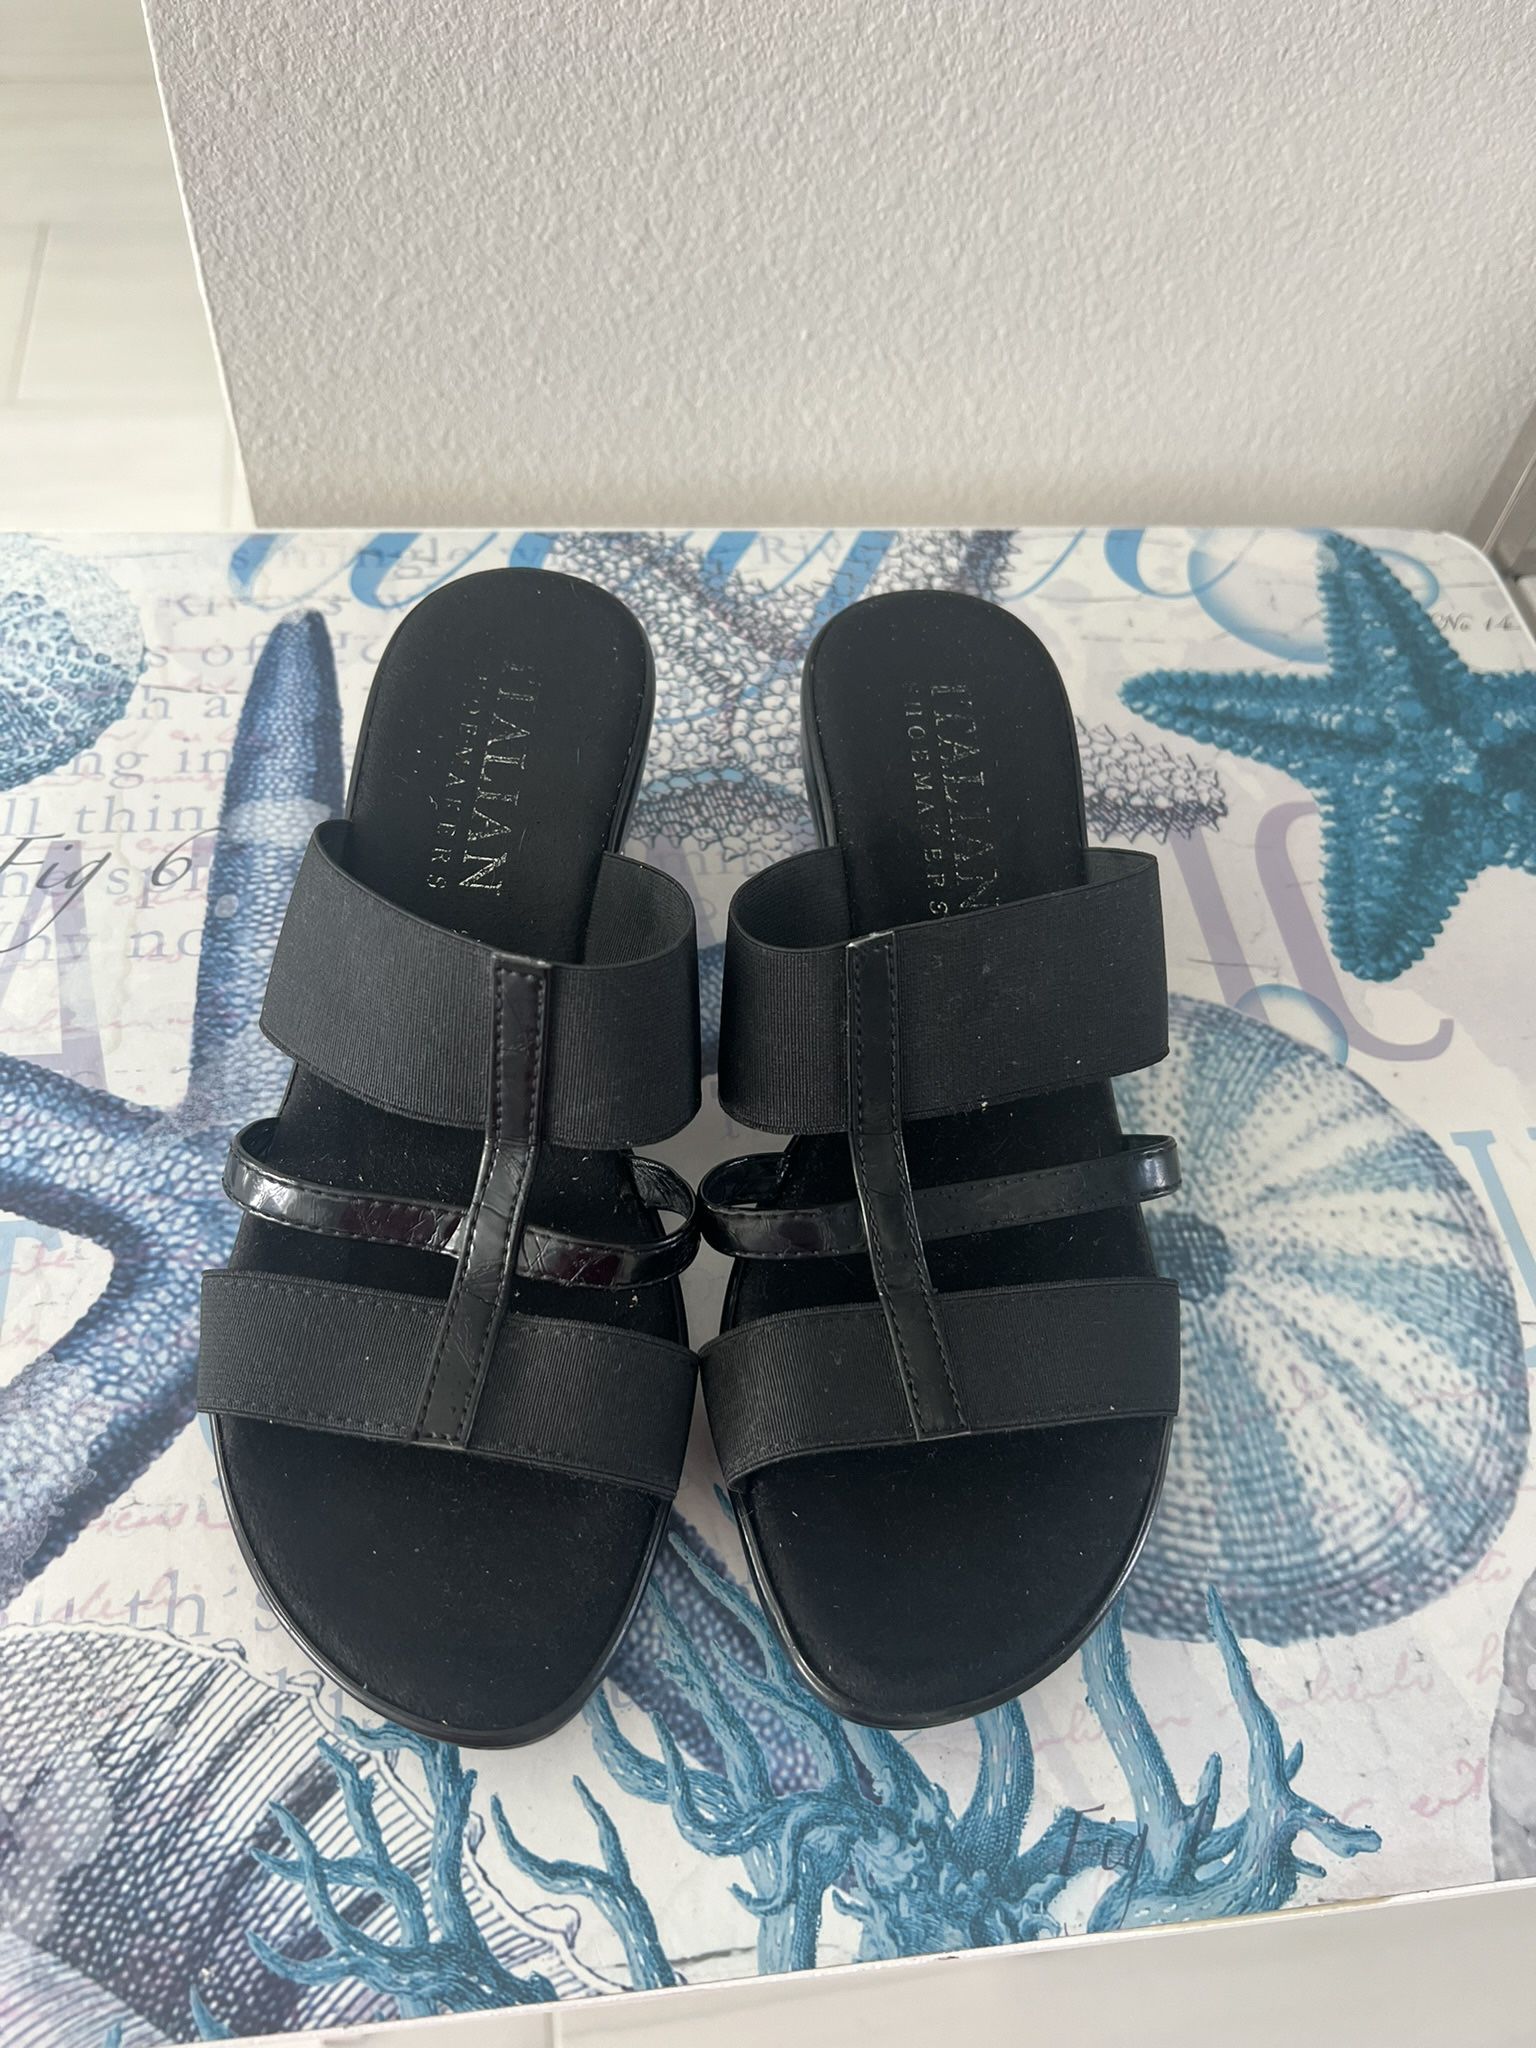 New Size 7 Italian shoemaker black slide sandal wedge